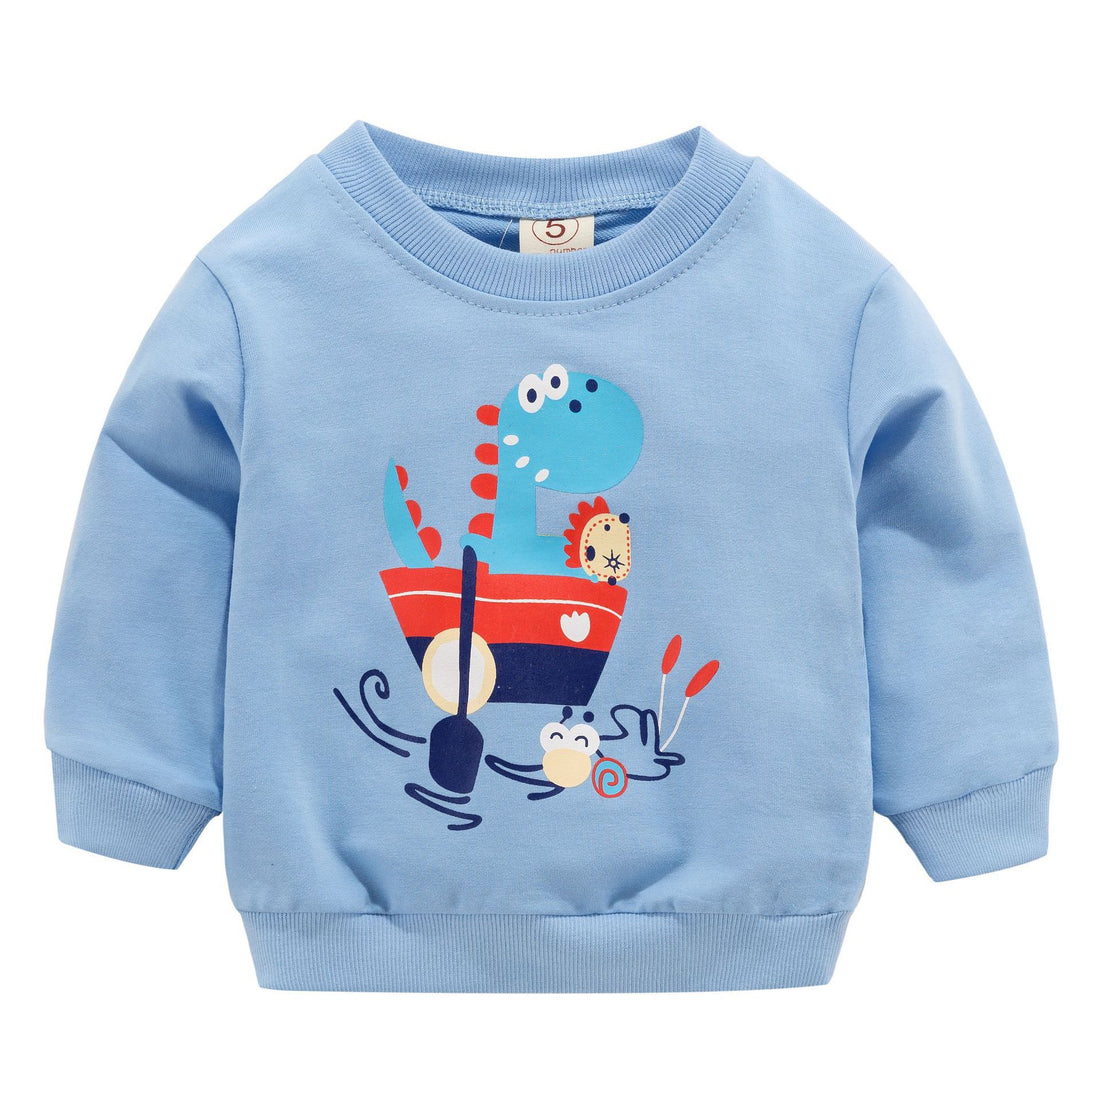 [102247] - Atasan Sweater Anak Sleek Style Import - Motif Dino Sailing